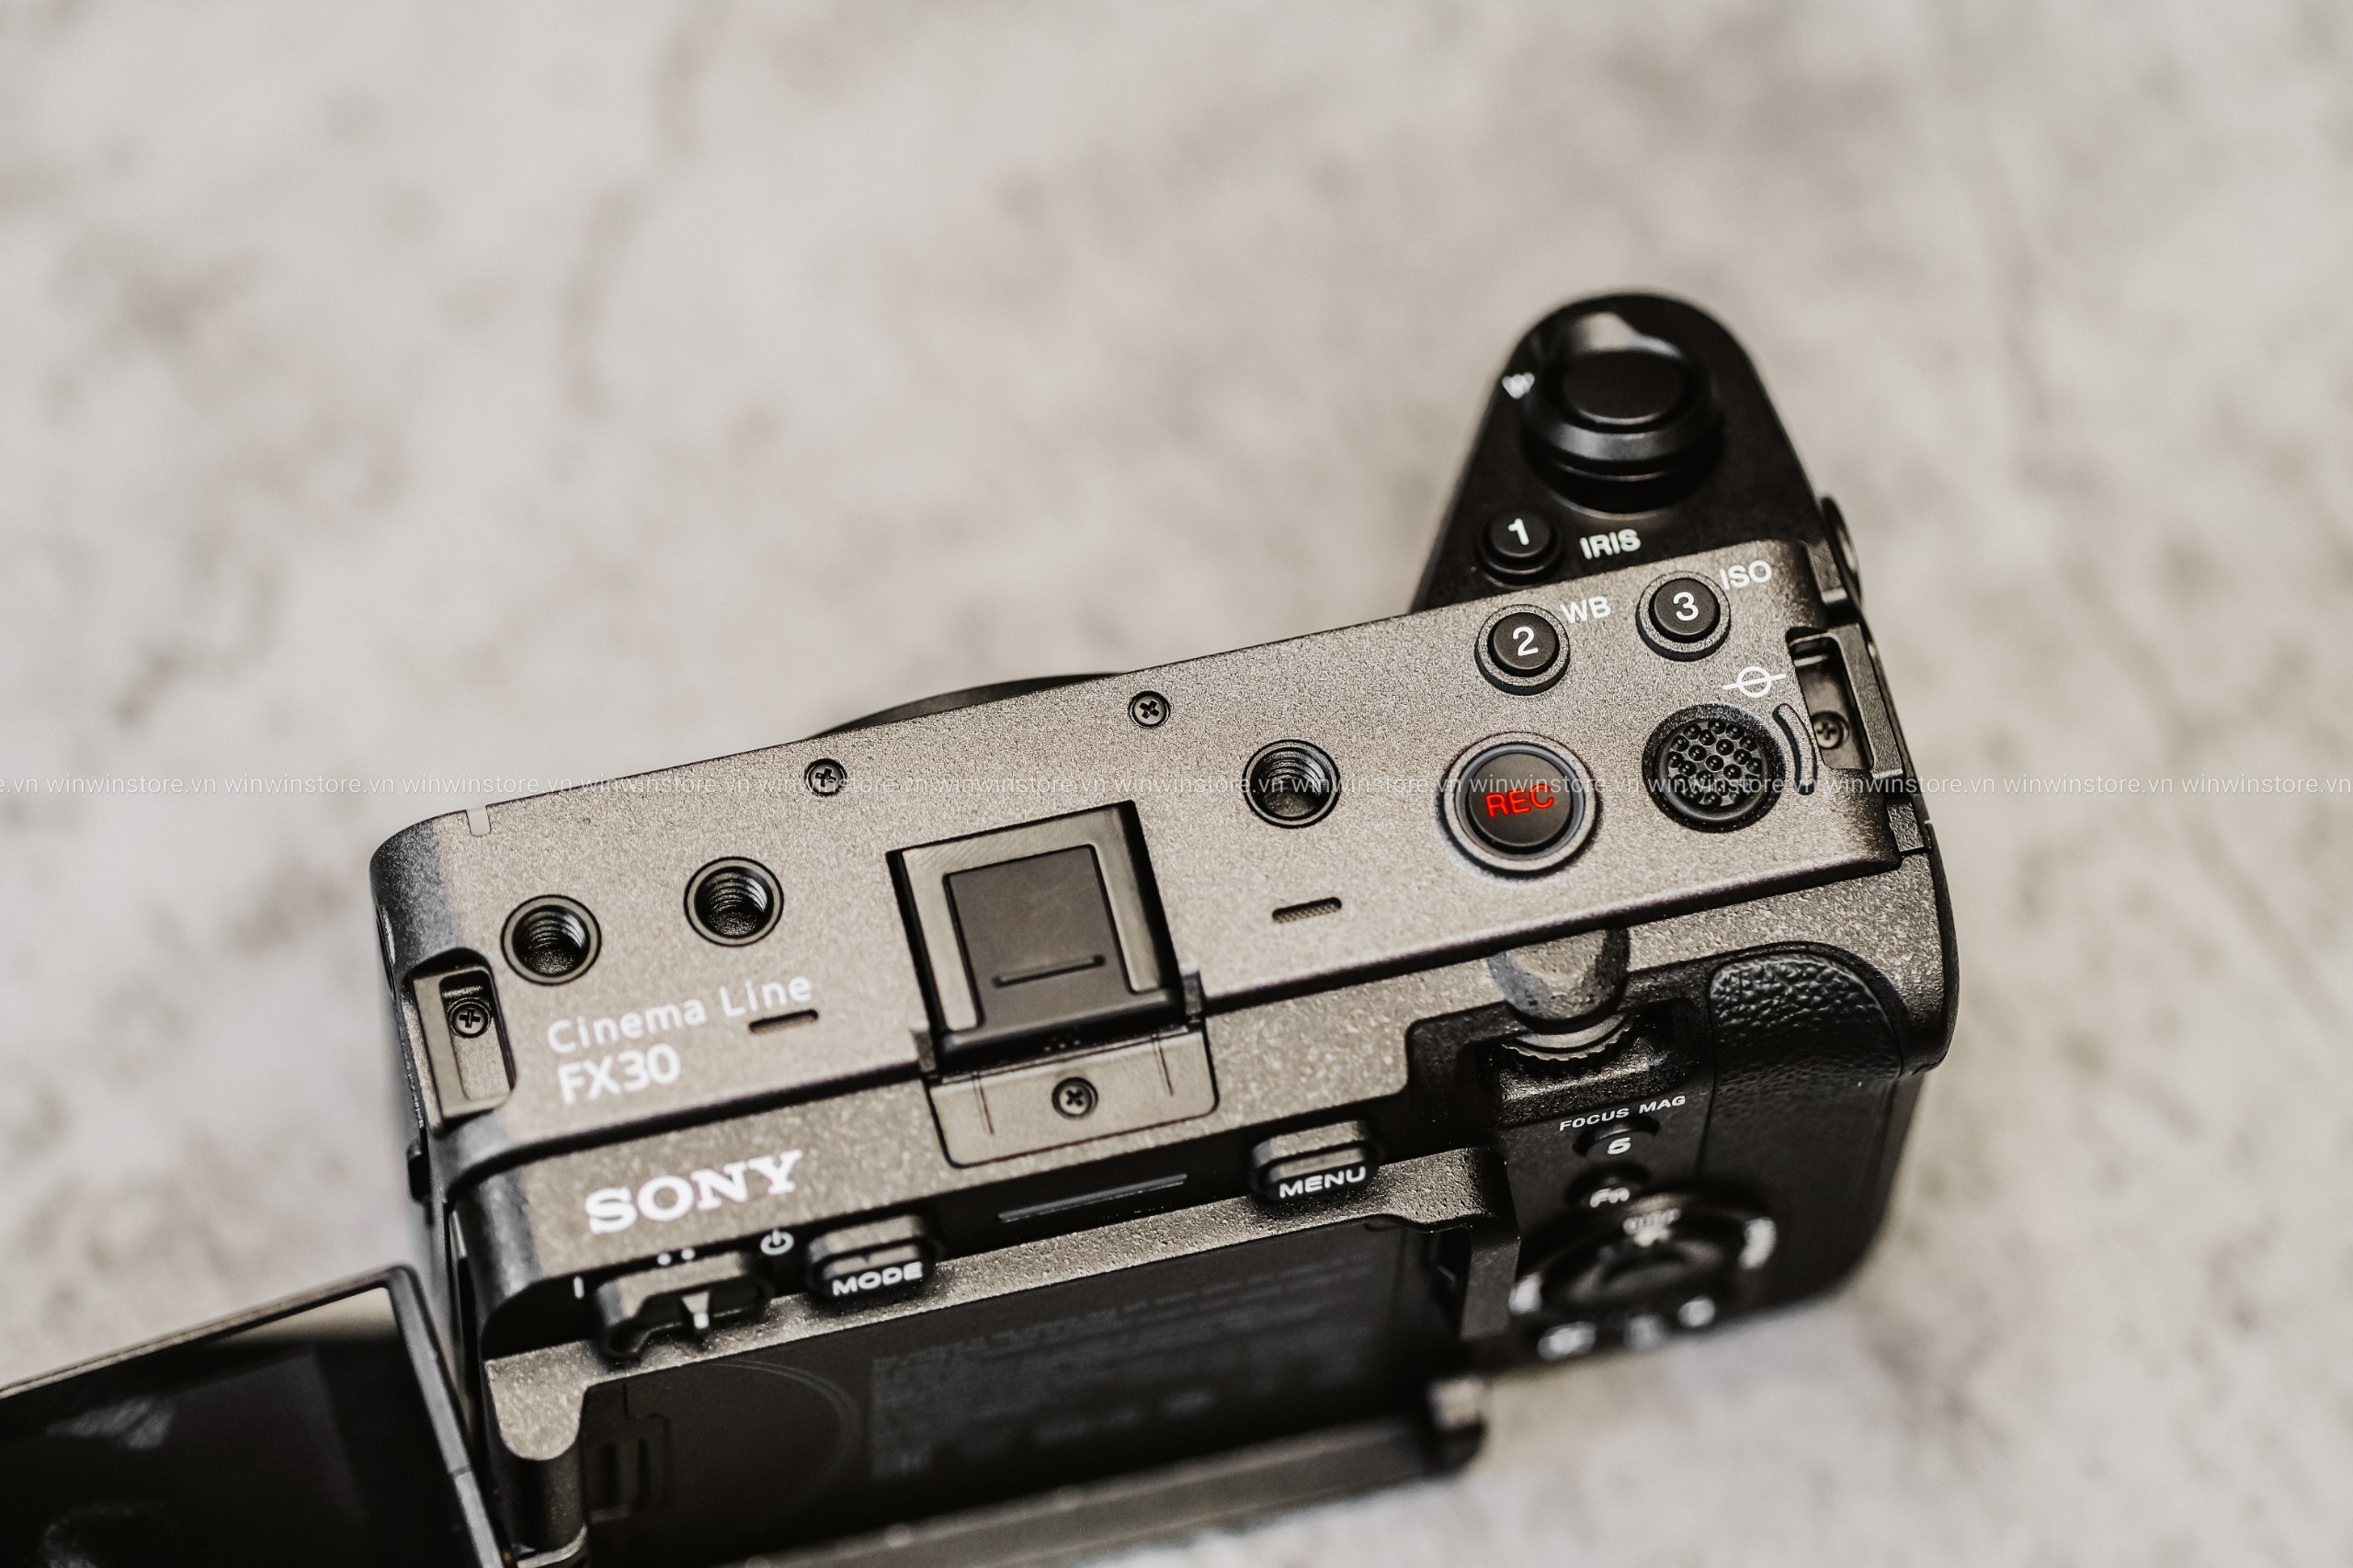 Máy quay Sony FX30